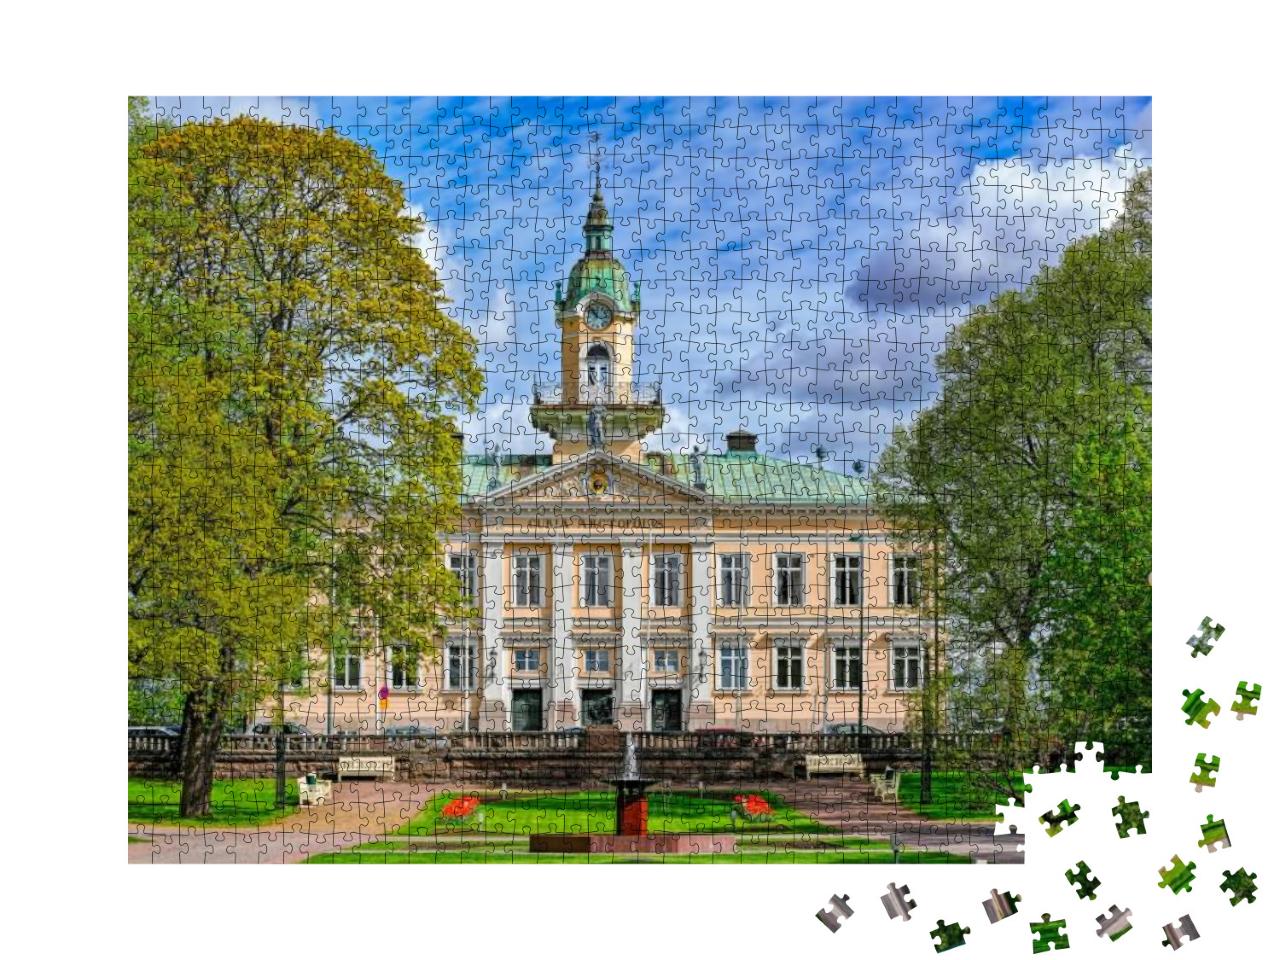 Puzzle 1000 Teile „Raatihuoneenpuisto, der Rathauspark von Pori, Finnland“